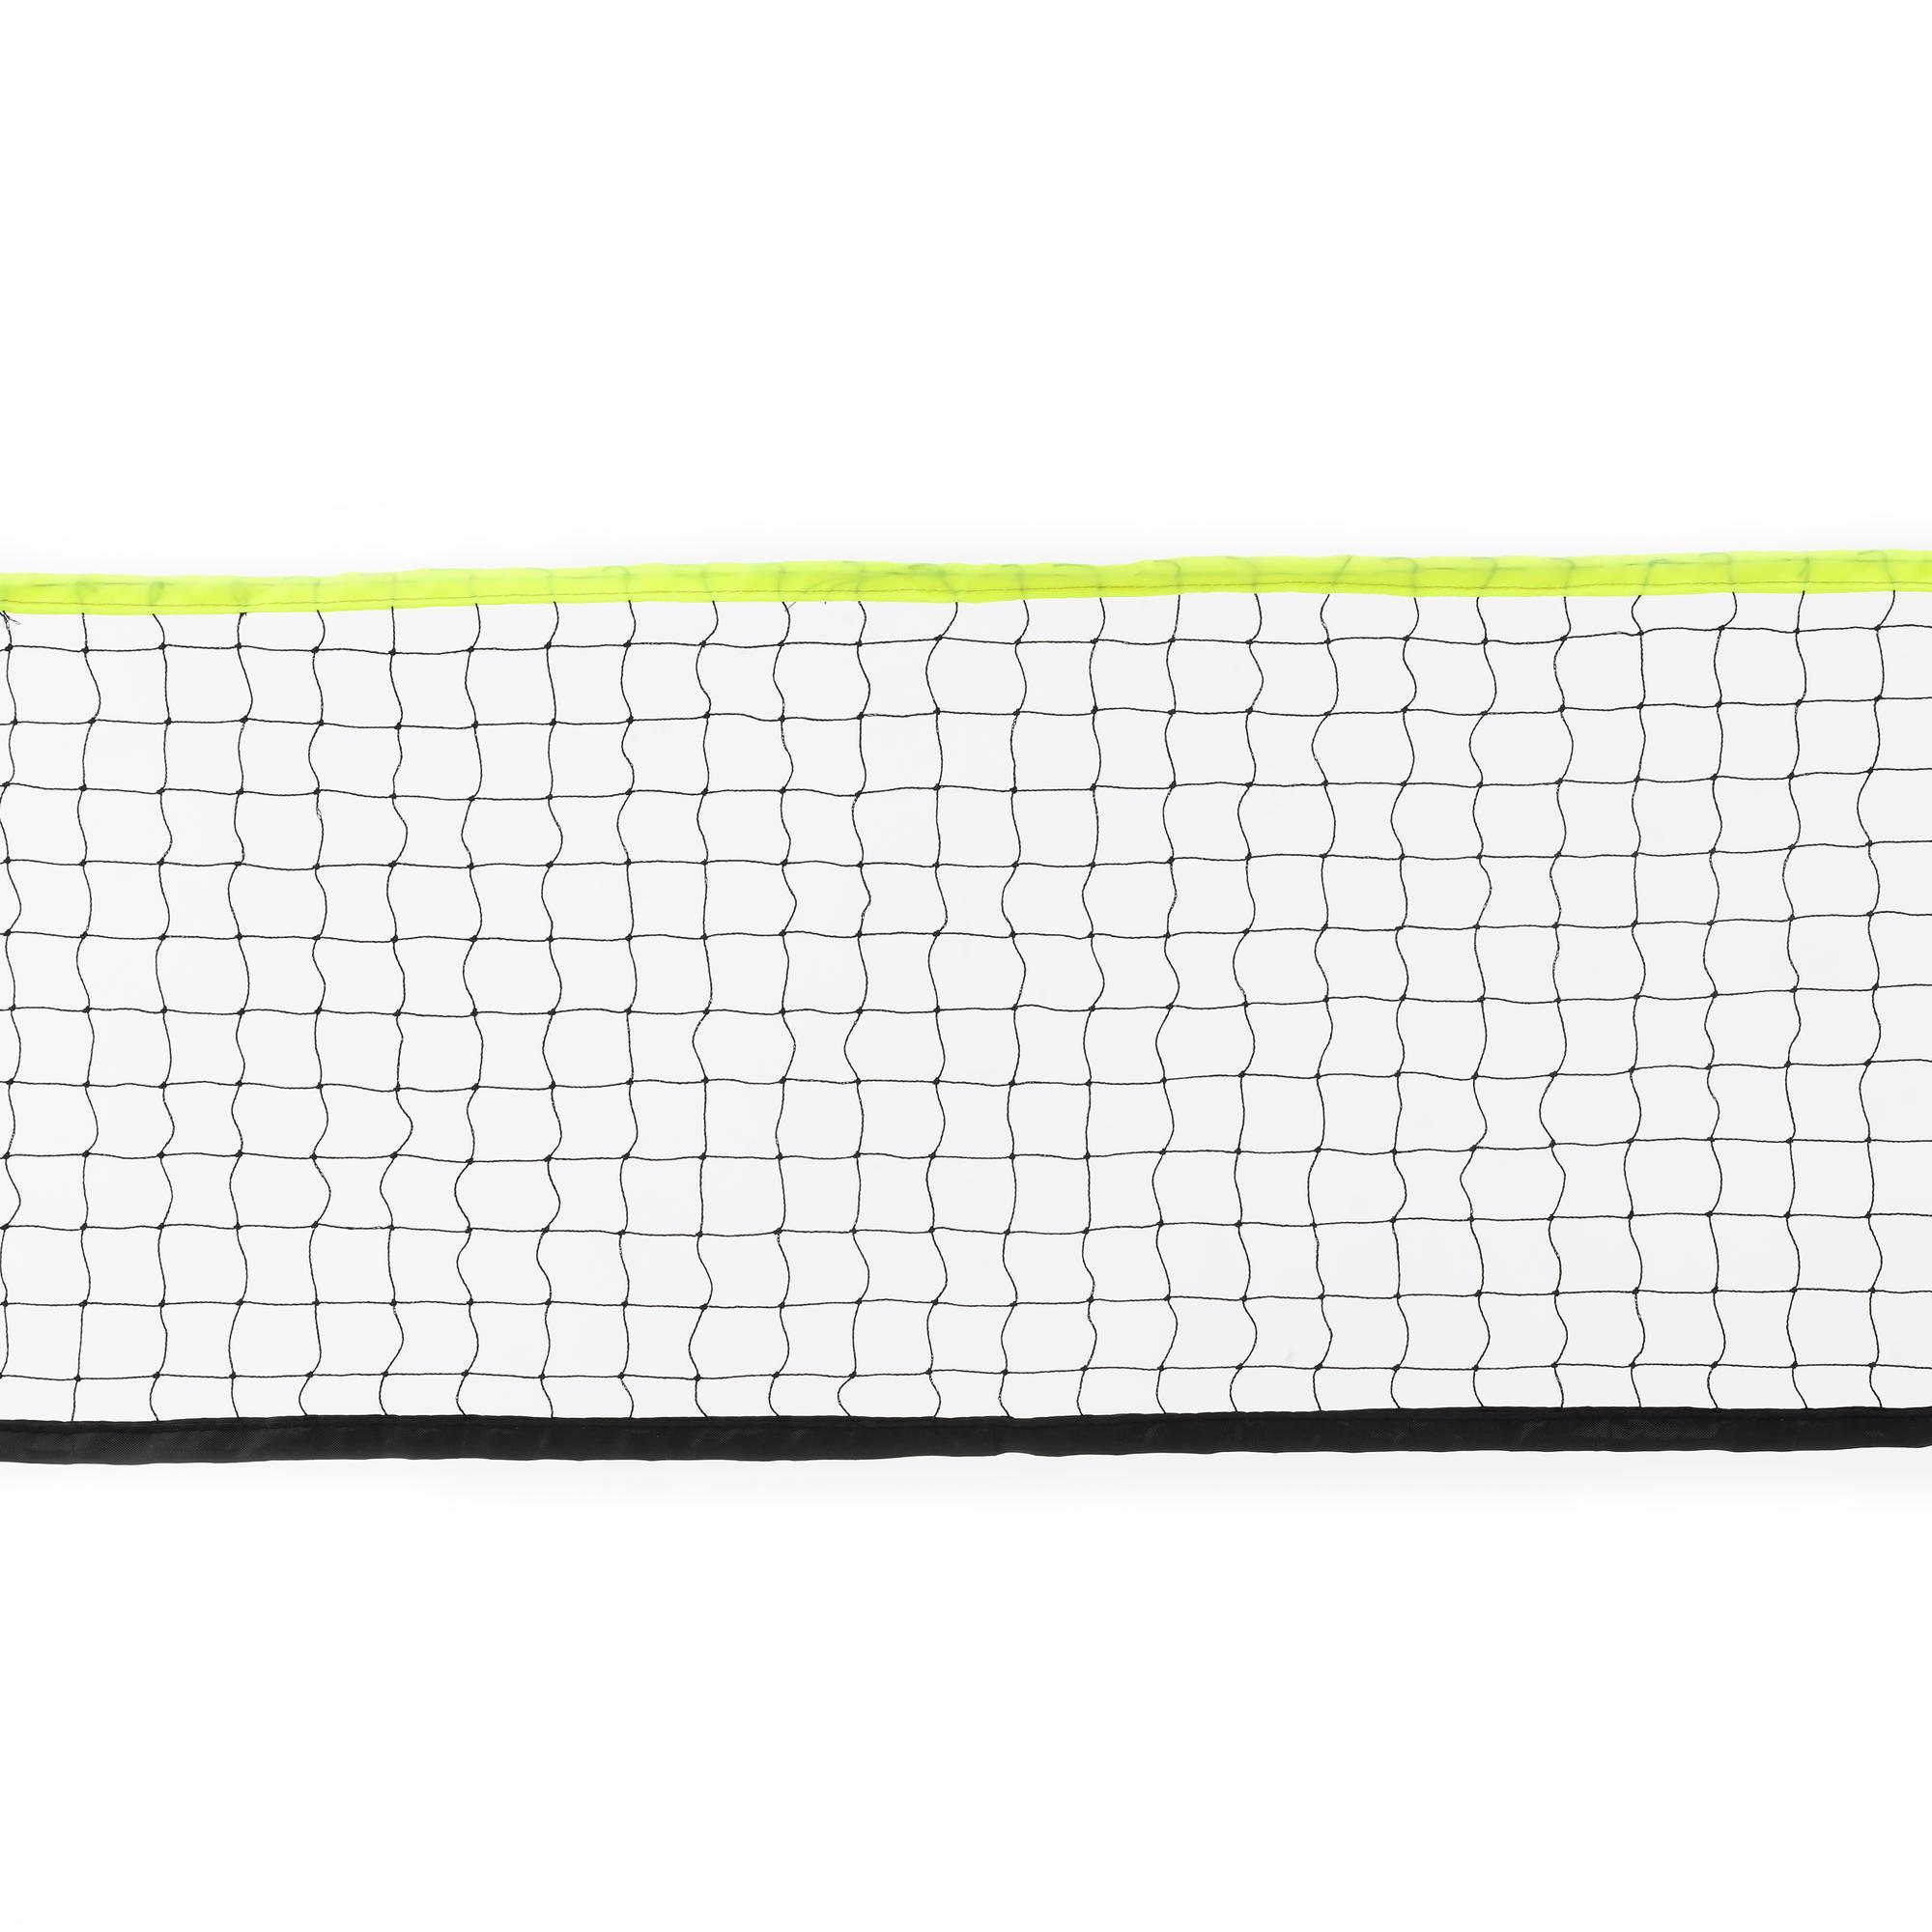 badminton net price decathlon